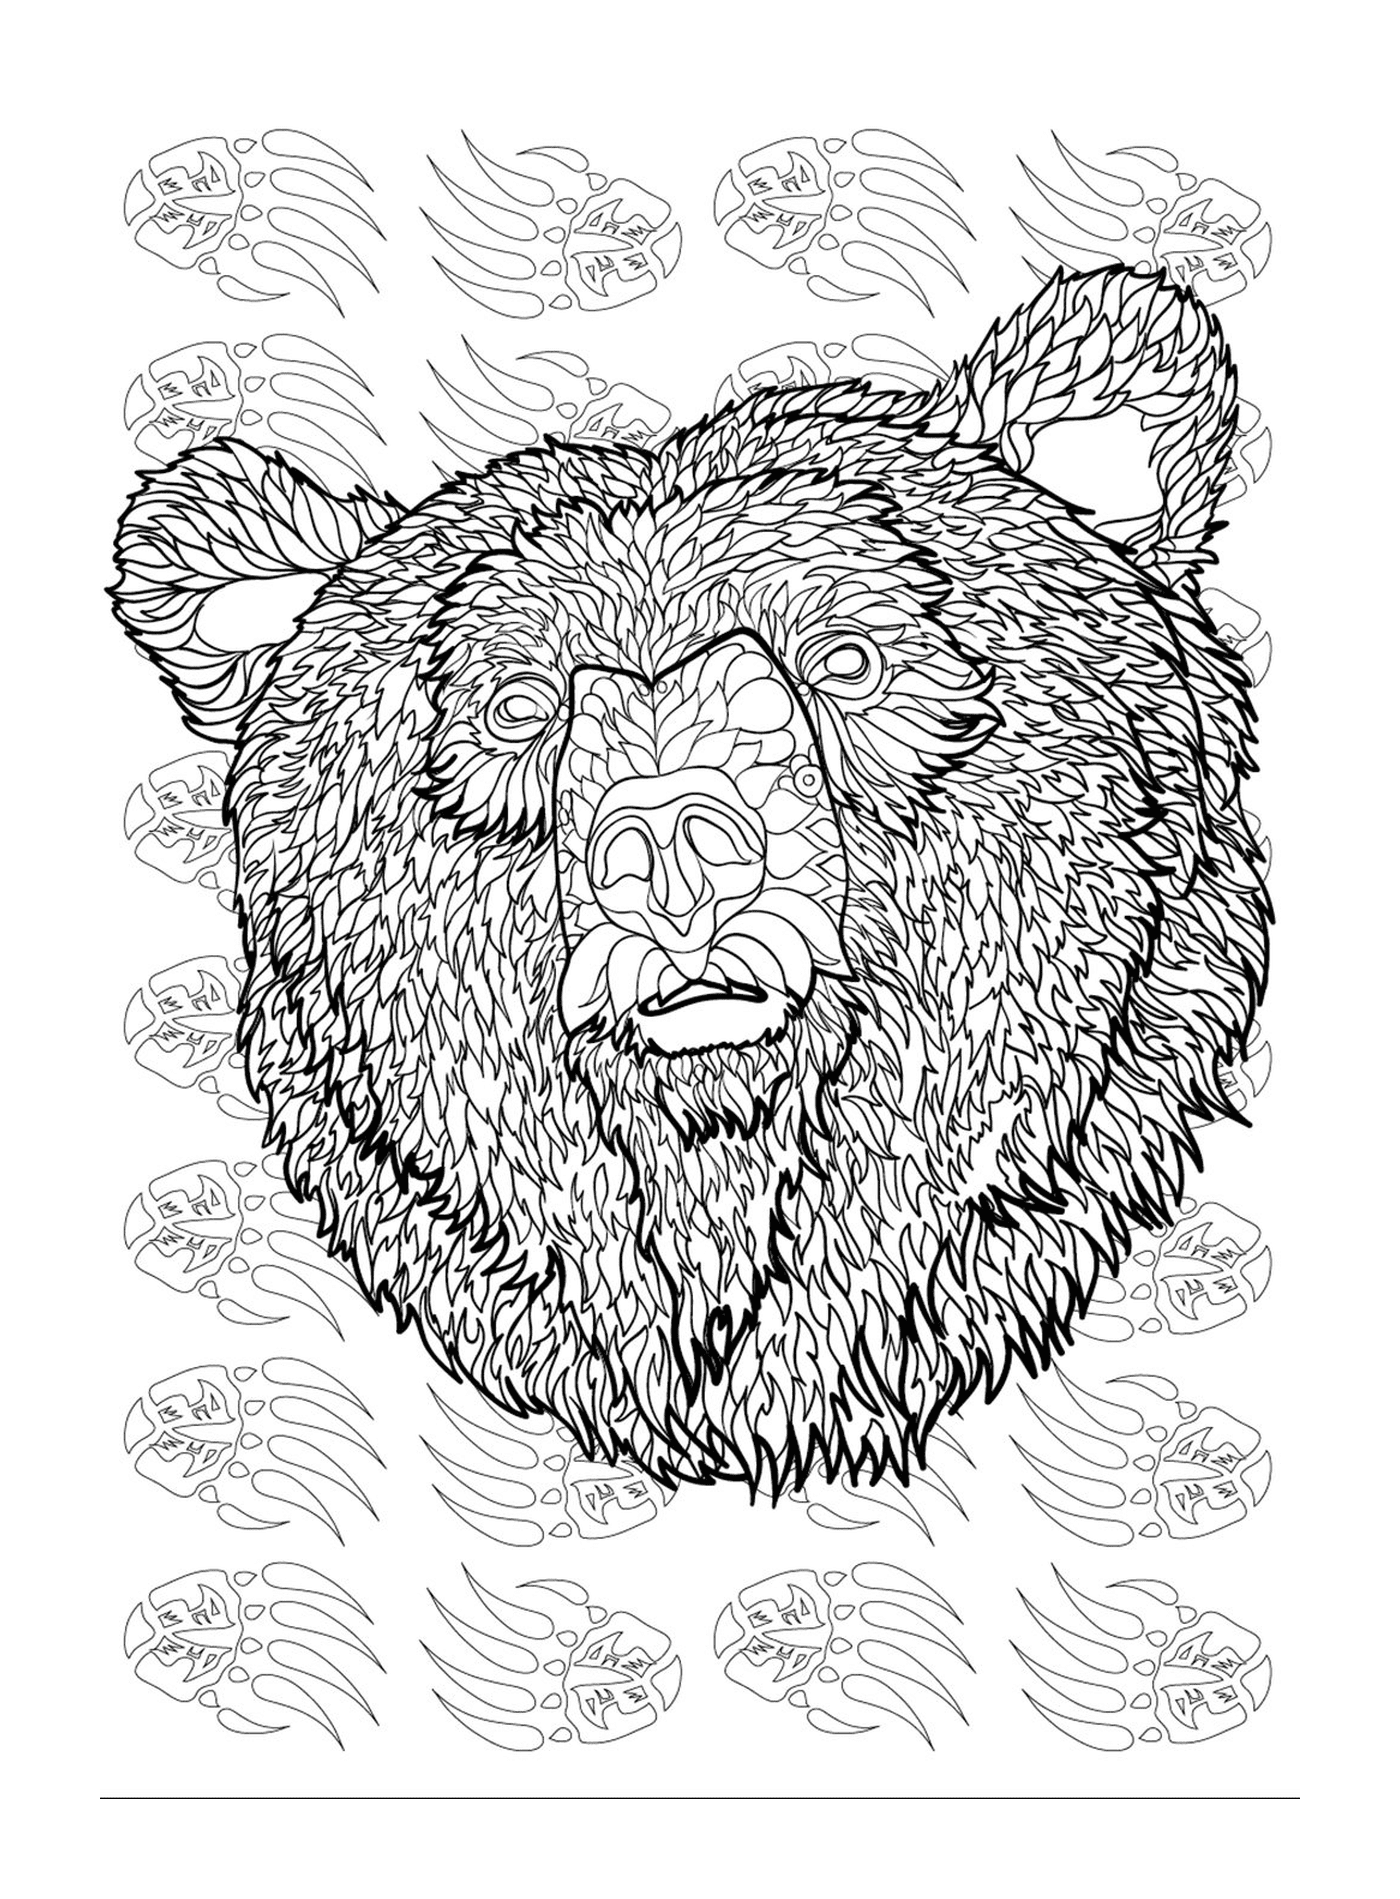  The head of a bear 